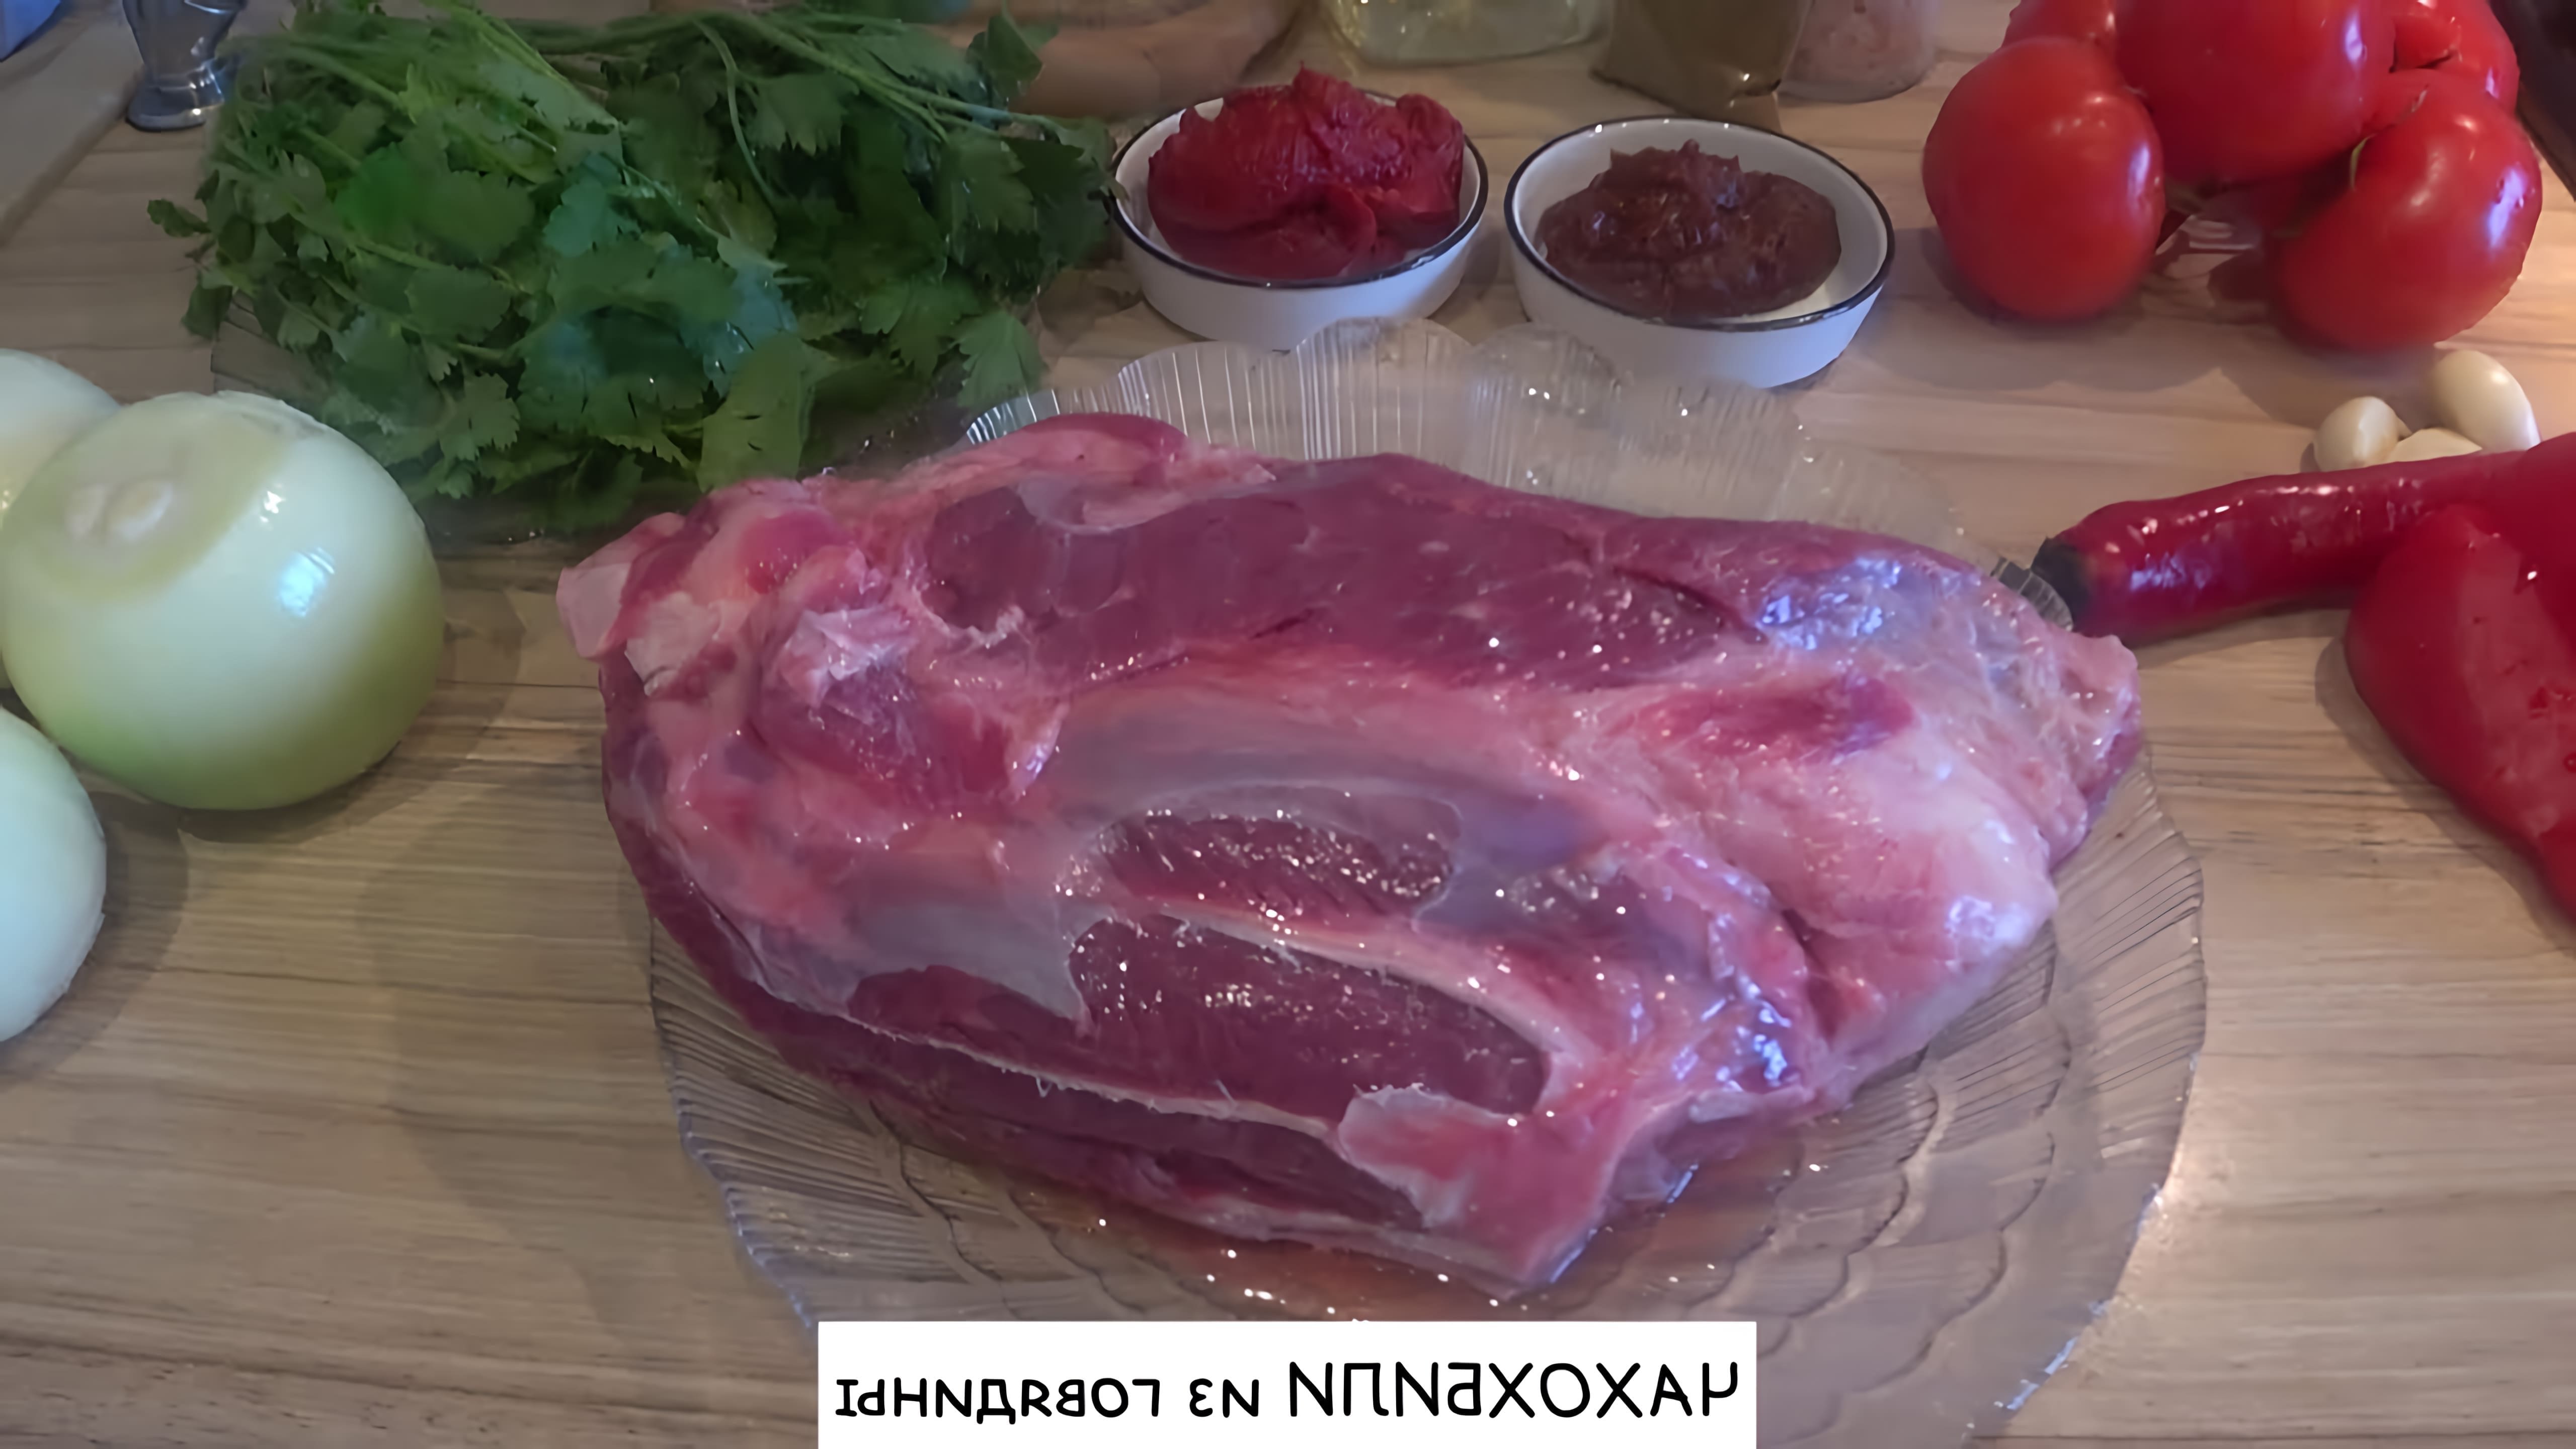 Чахохбили - это грузинское блюдо, которое готовится из мяса птицы или говядины